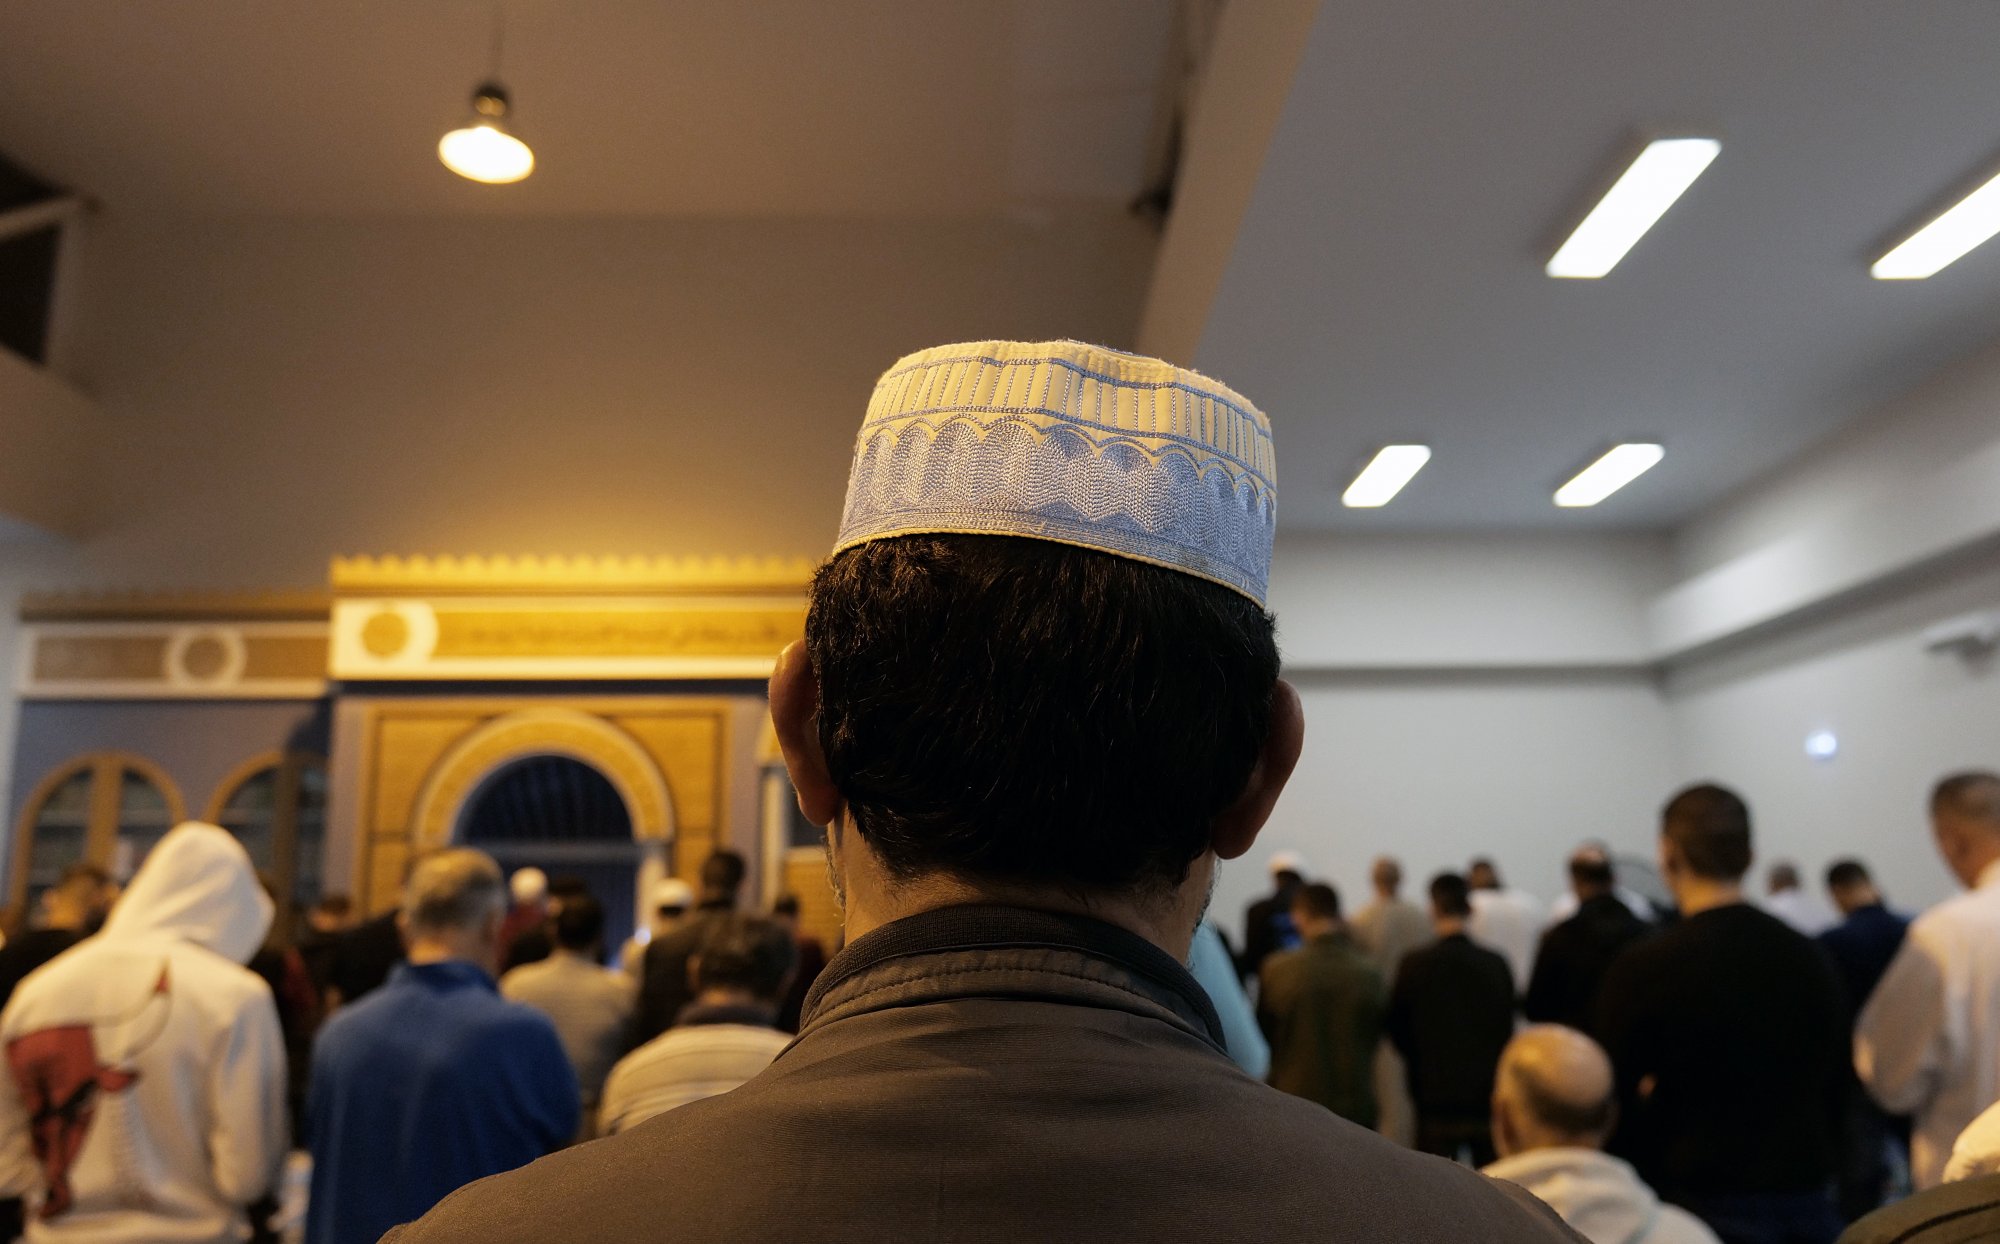 Γιορτάζοντας το Ραμαζάνι στο Ισλαμικό Τέμενος της Αθήνας